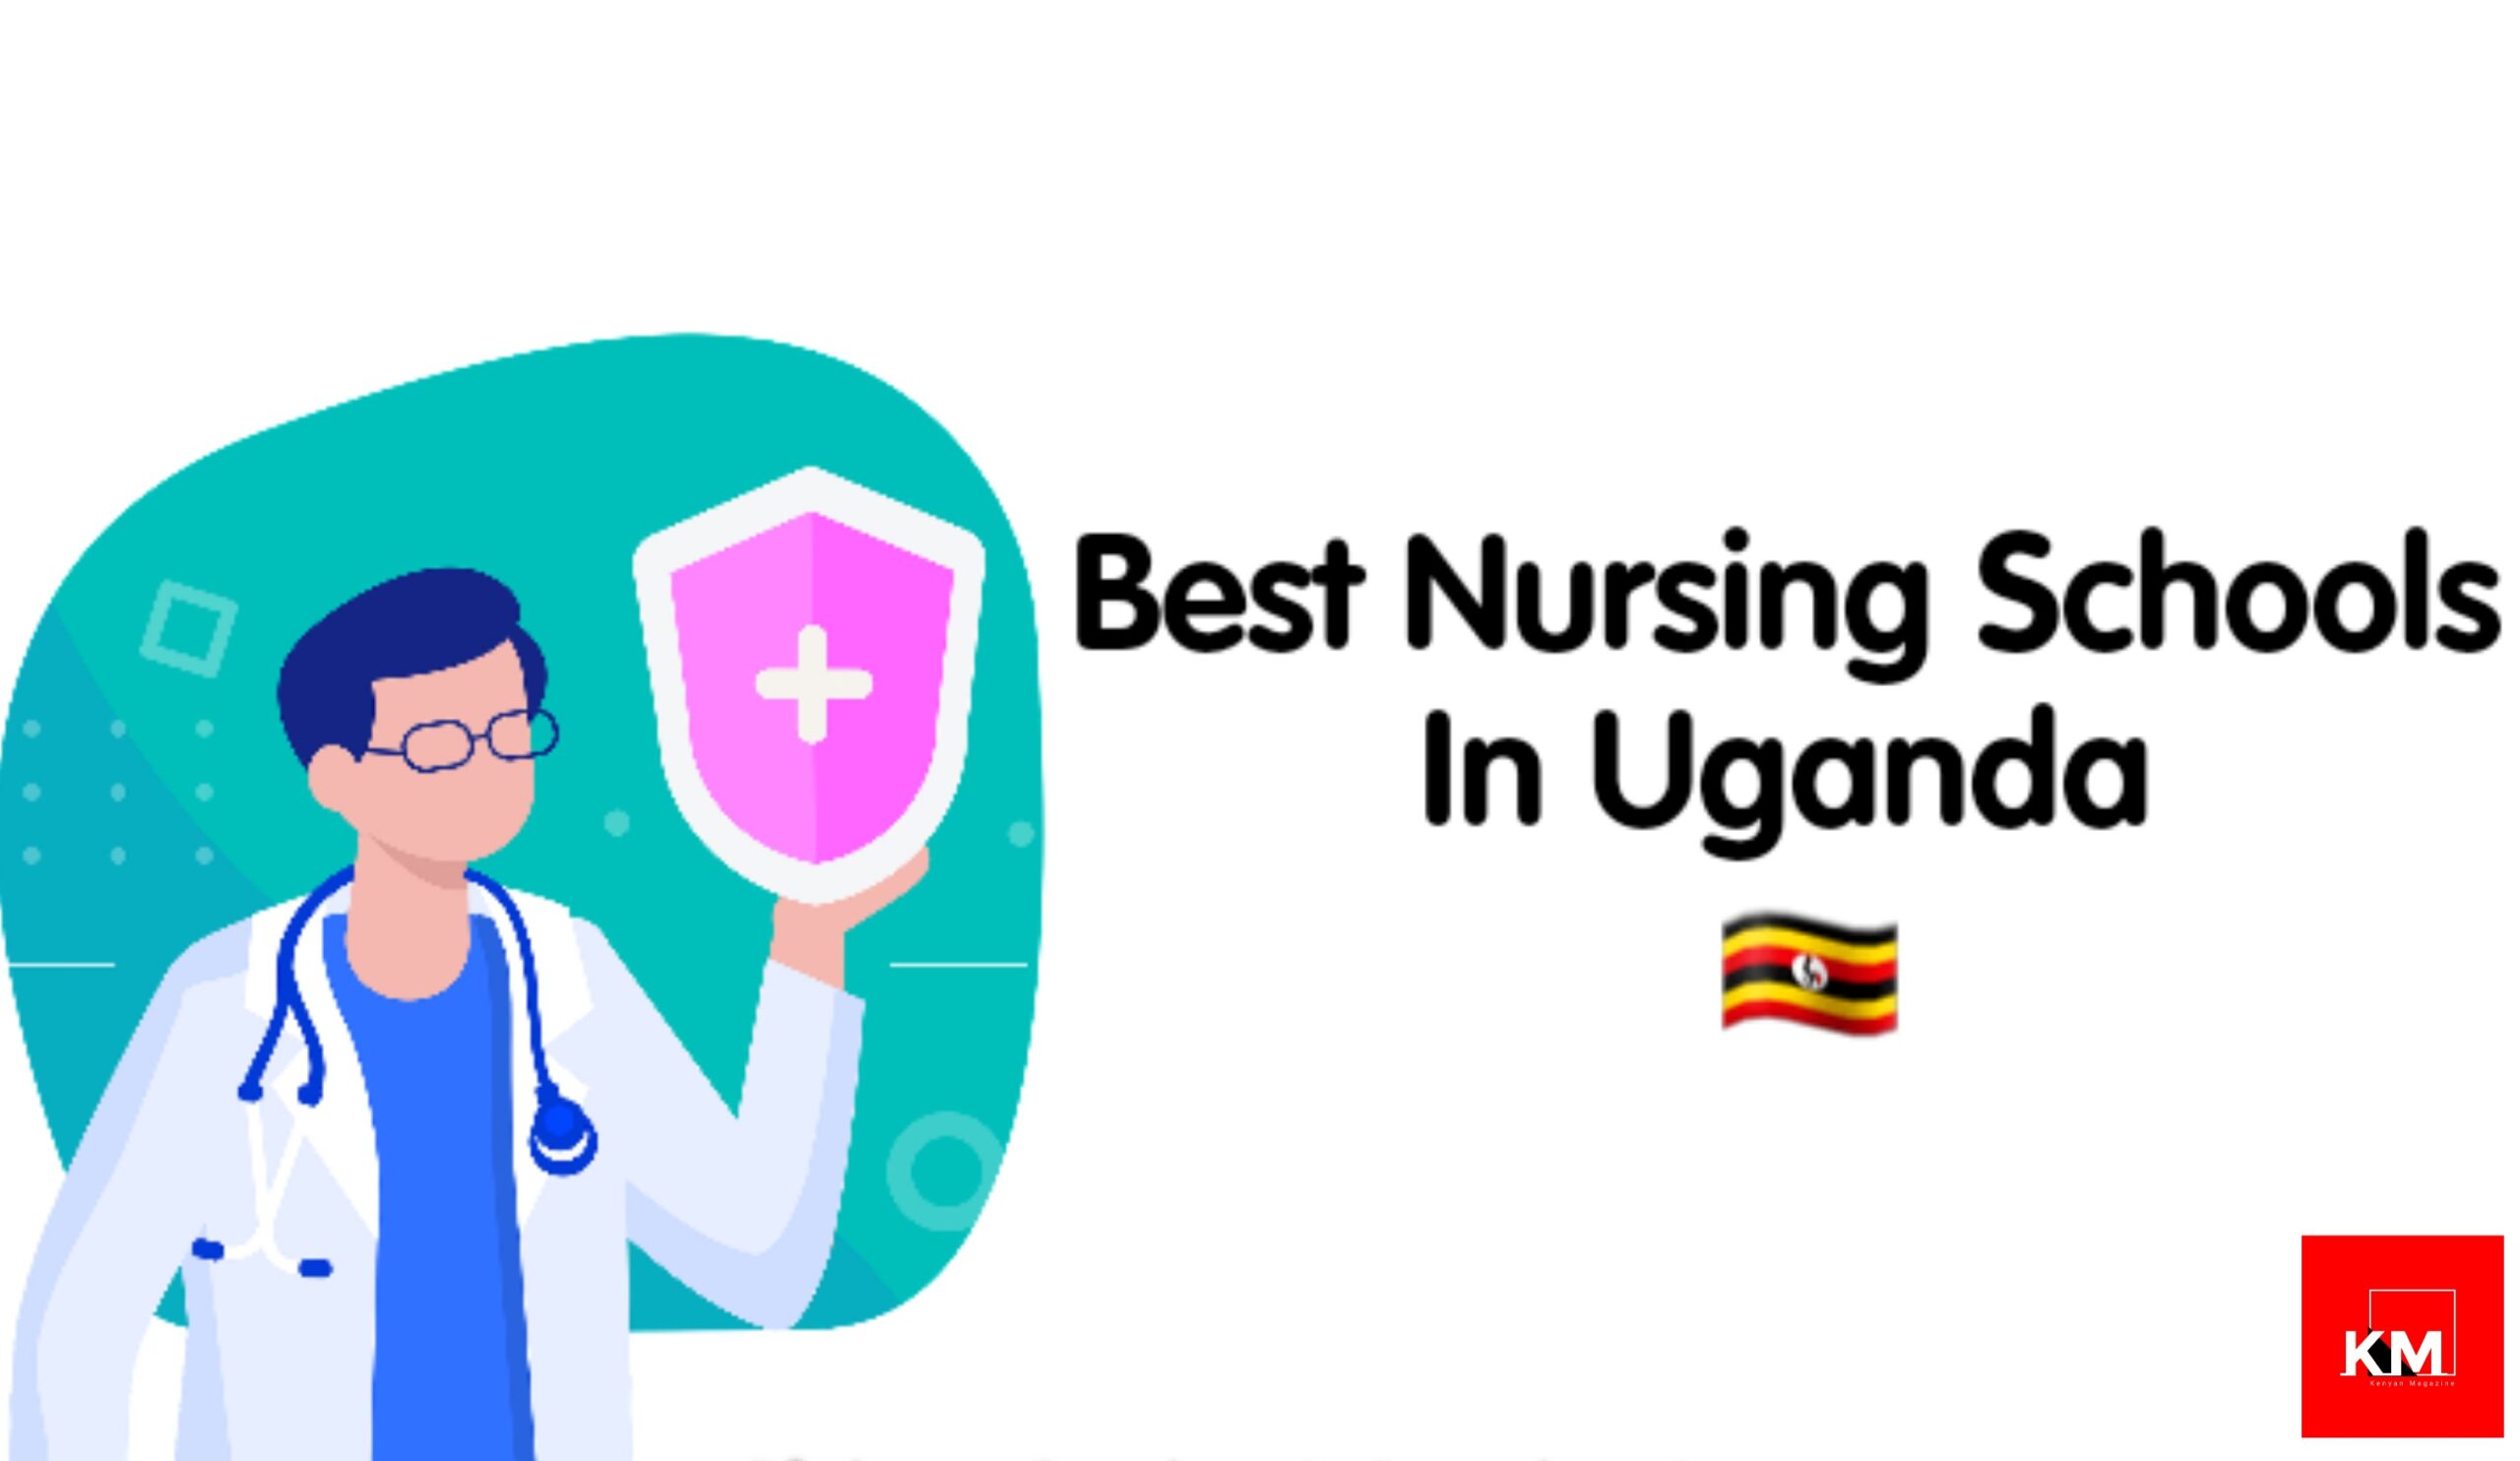 Nursing schools in uganda